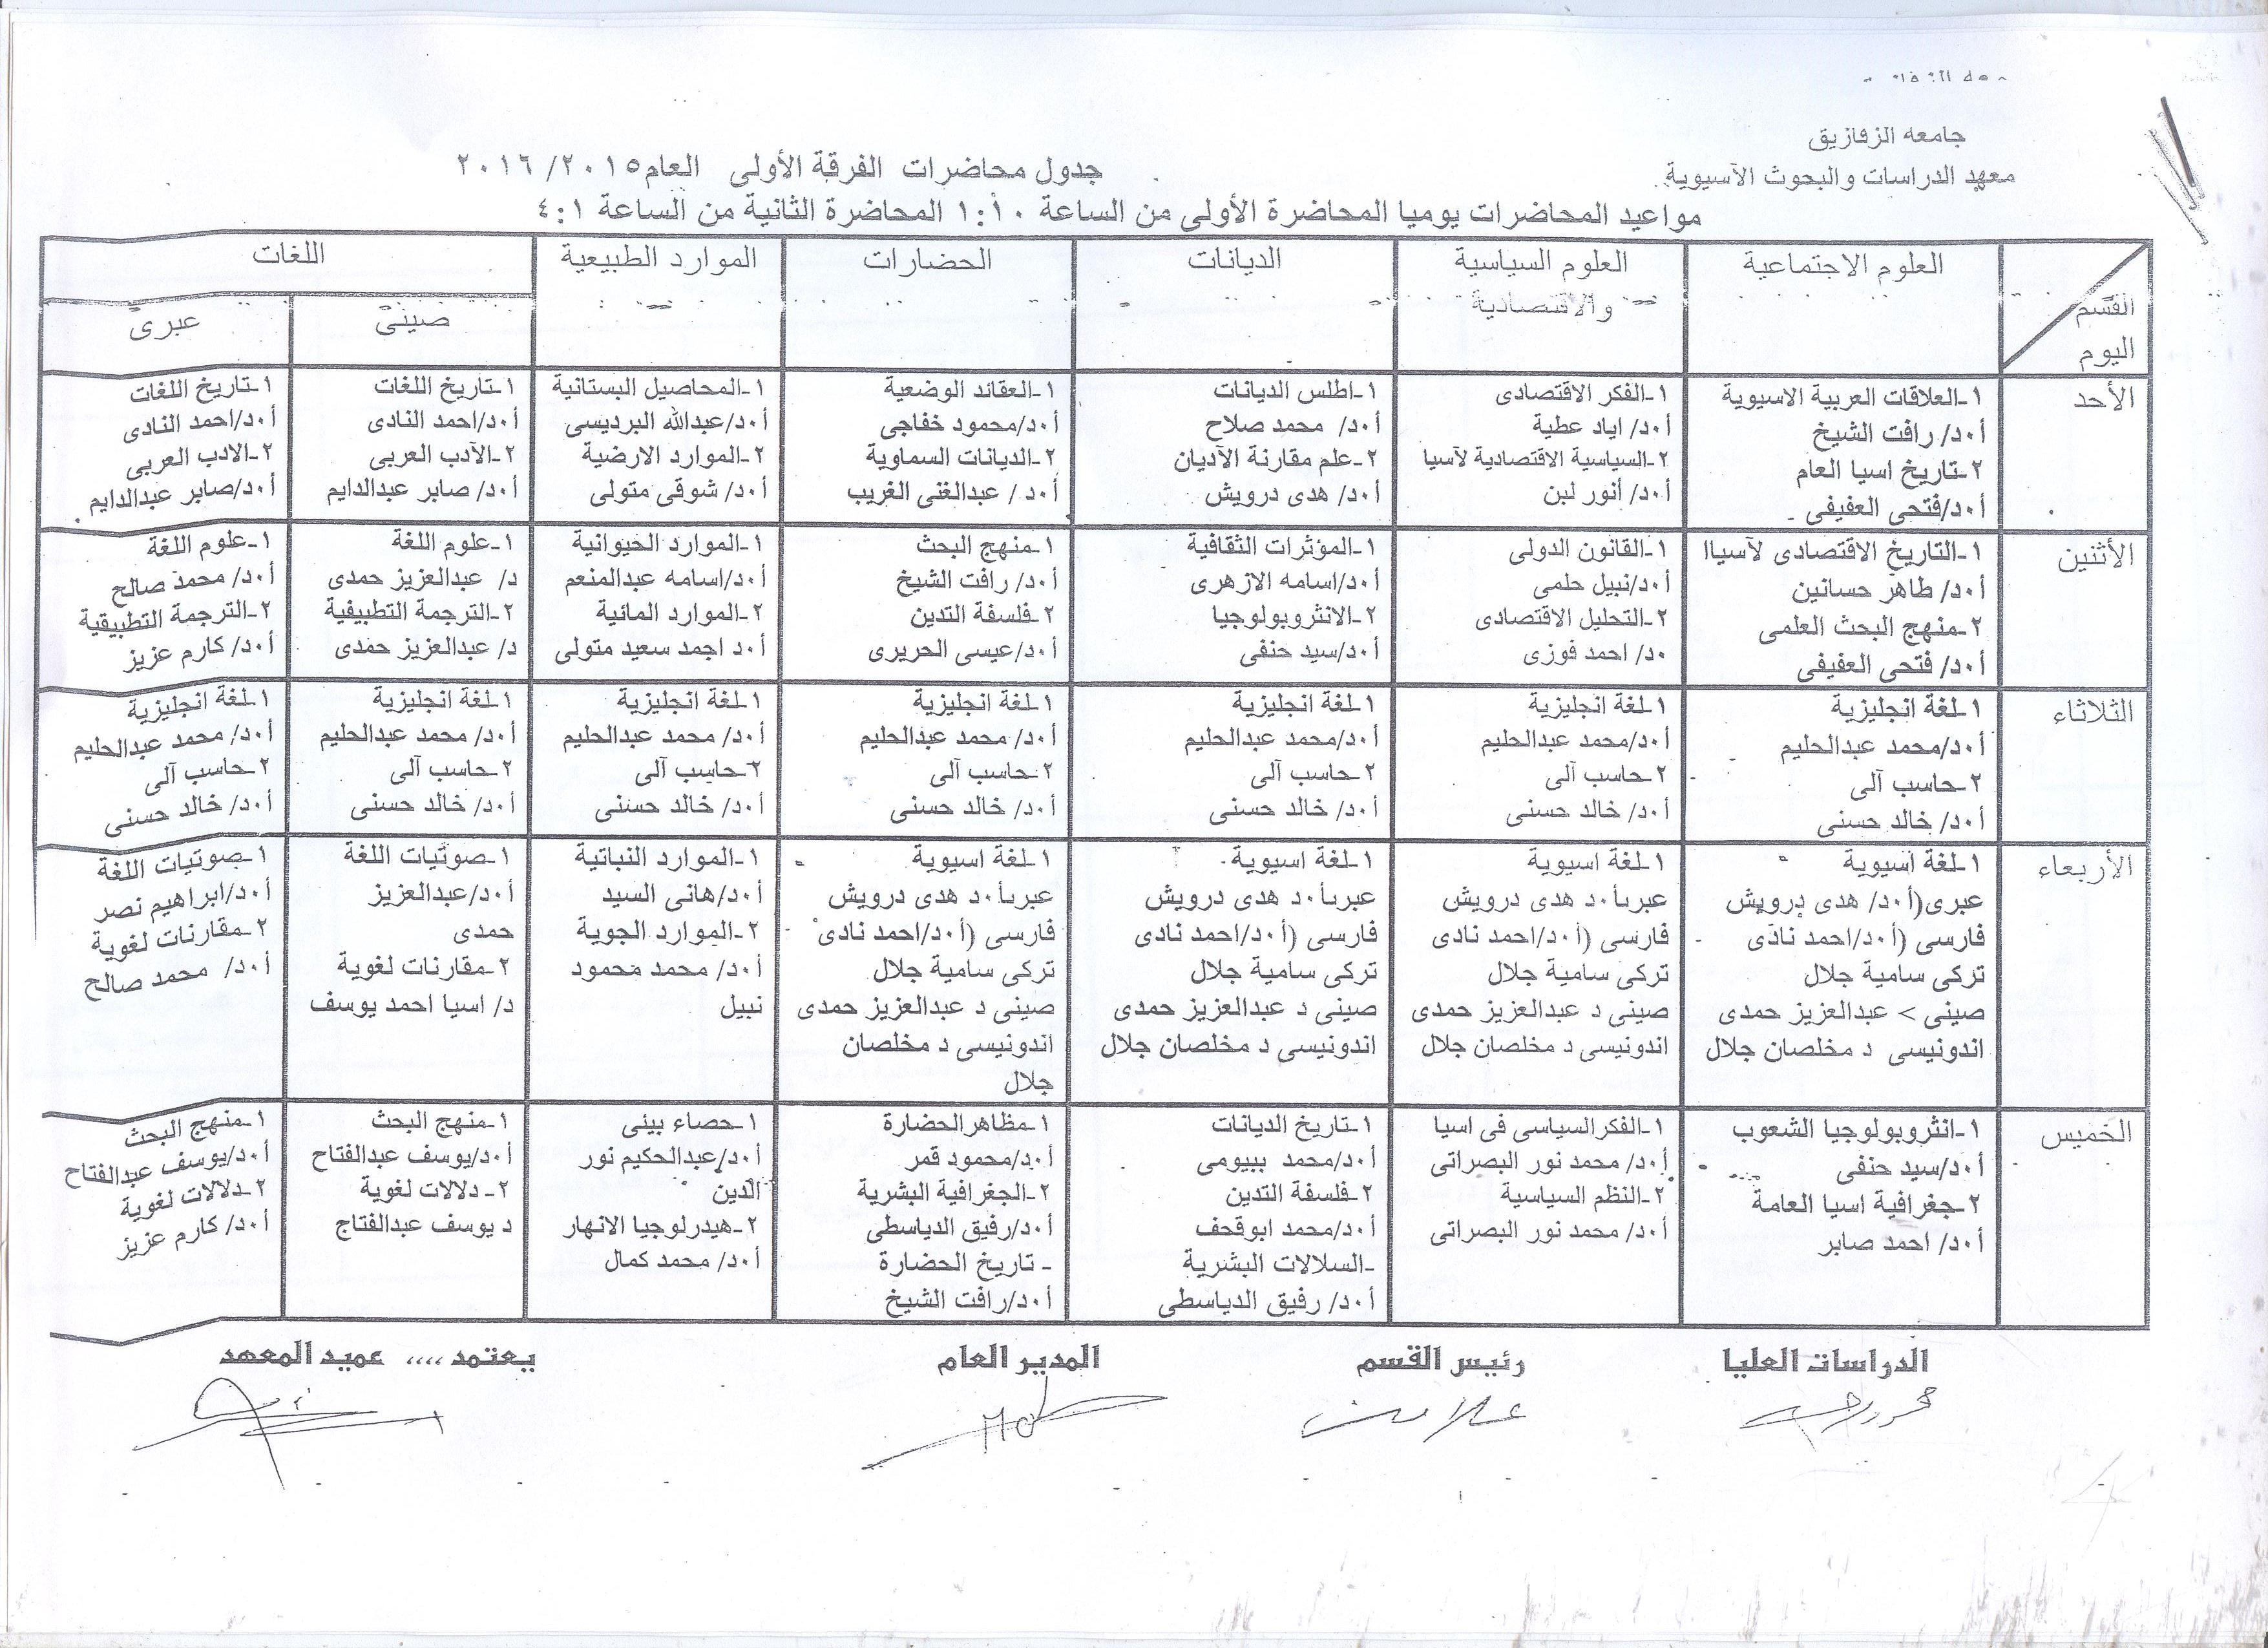 جدول محاضرات الفرقه الاولي العام 2015/2016